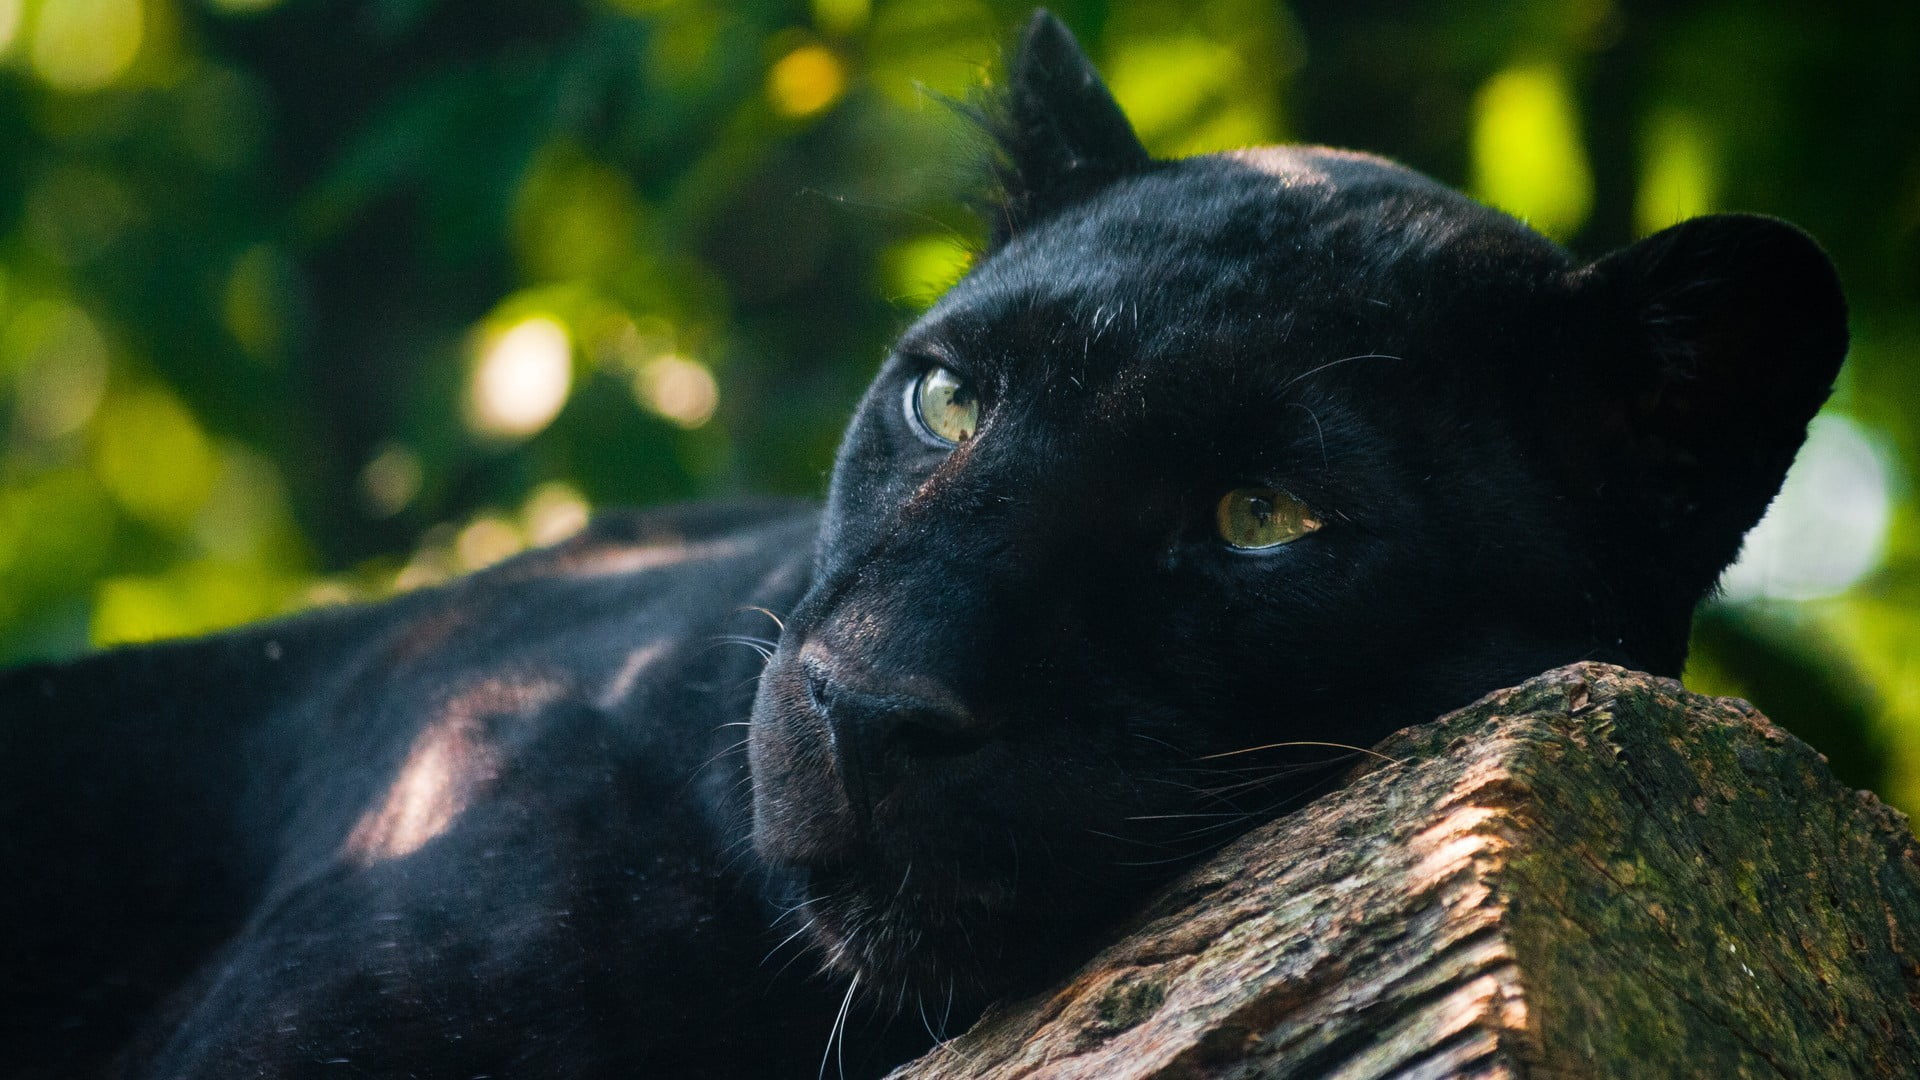 adult black panther, panthers, animals, photography, Jaguar, cat